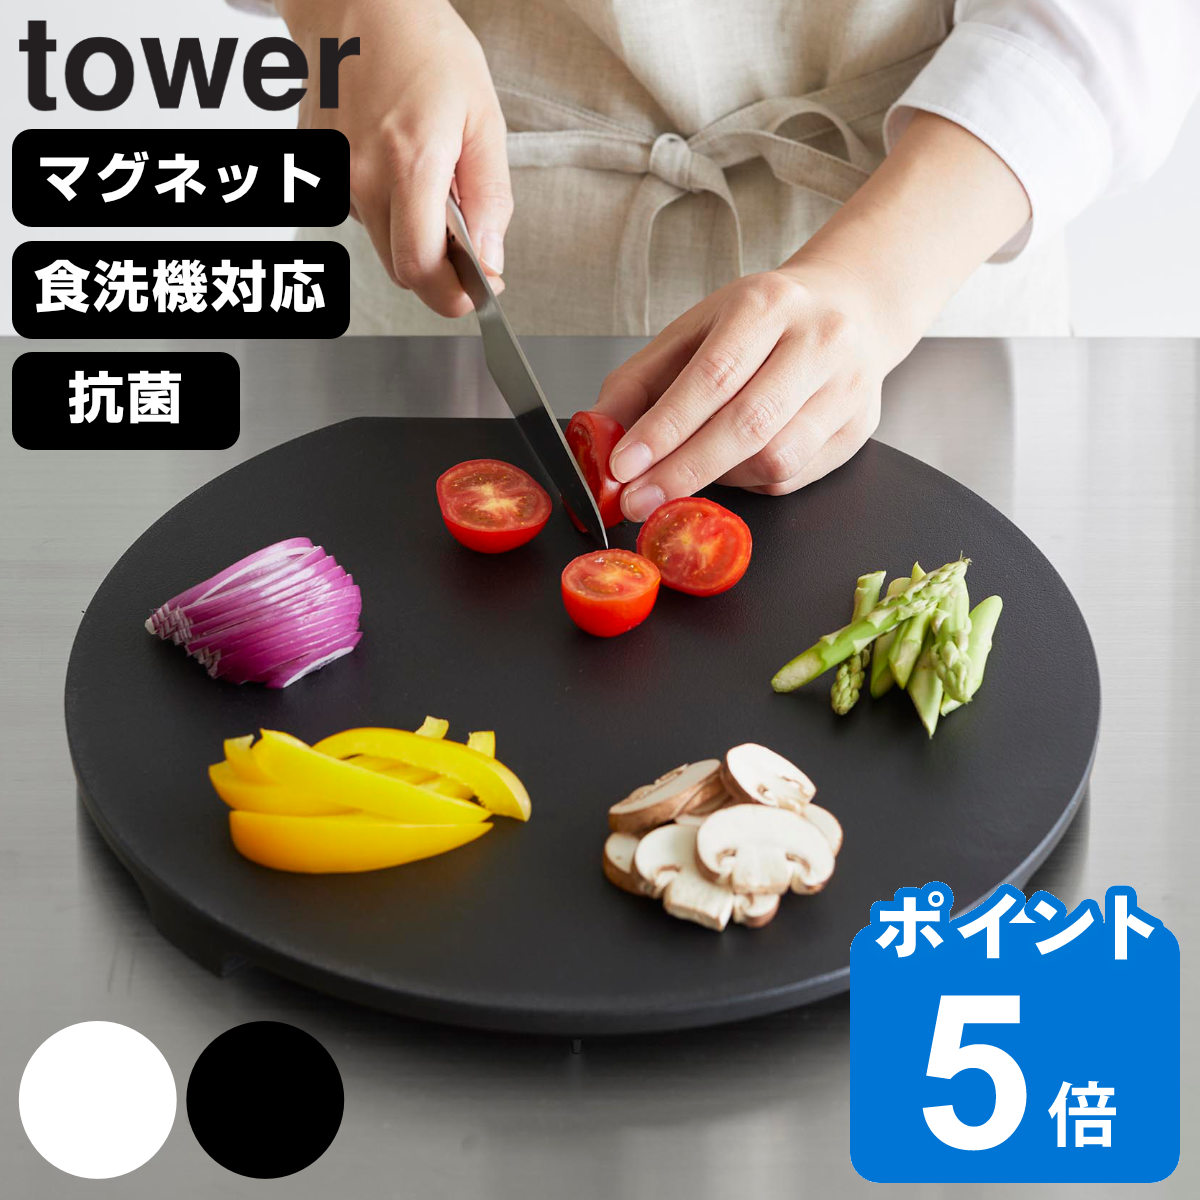 山崎実業 tower 食洗機対応 マグネット抗菌まな板 タワー ラウンド